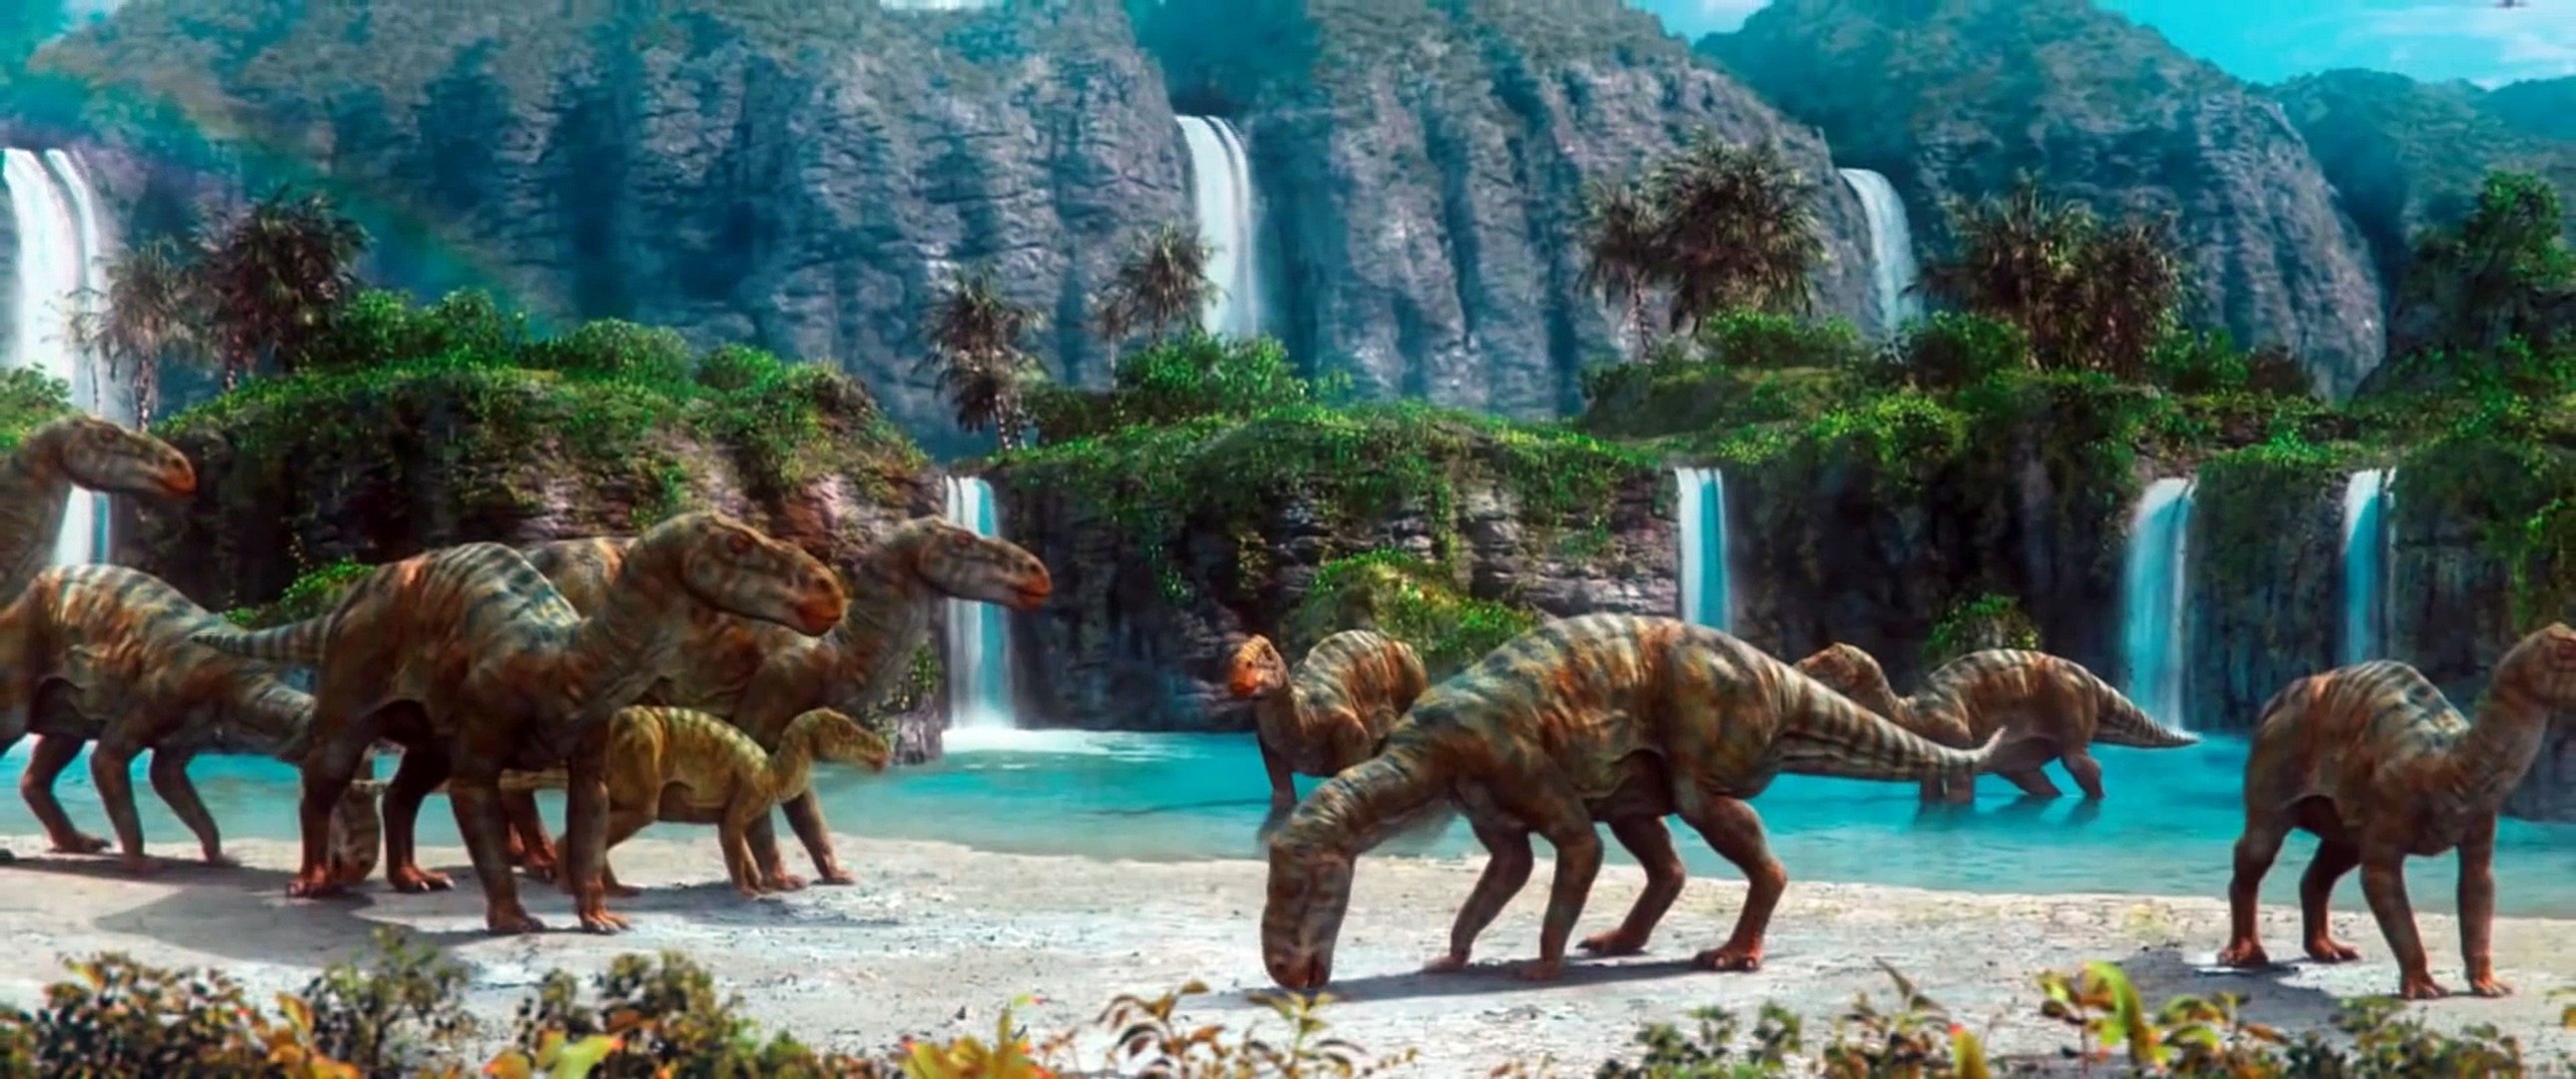 Ilha dos Dinossauros - Aprenda Jogando 